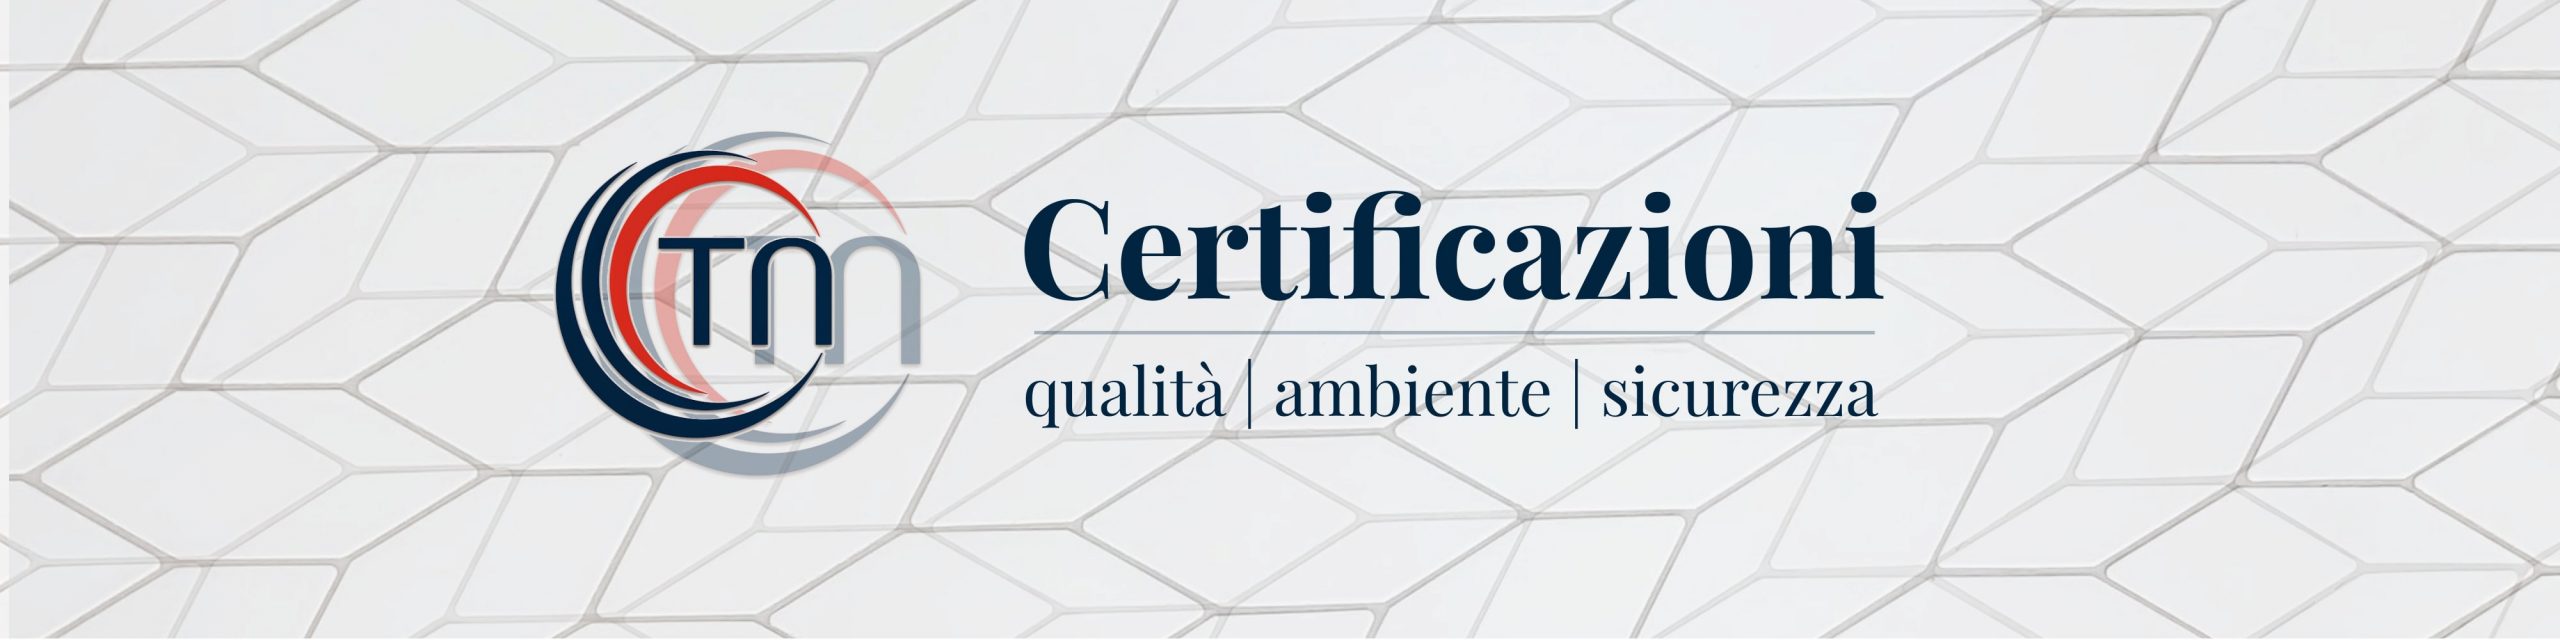 NICOLETTI-certificazioni-COVER-v03 - stretta